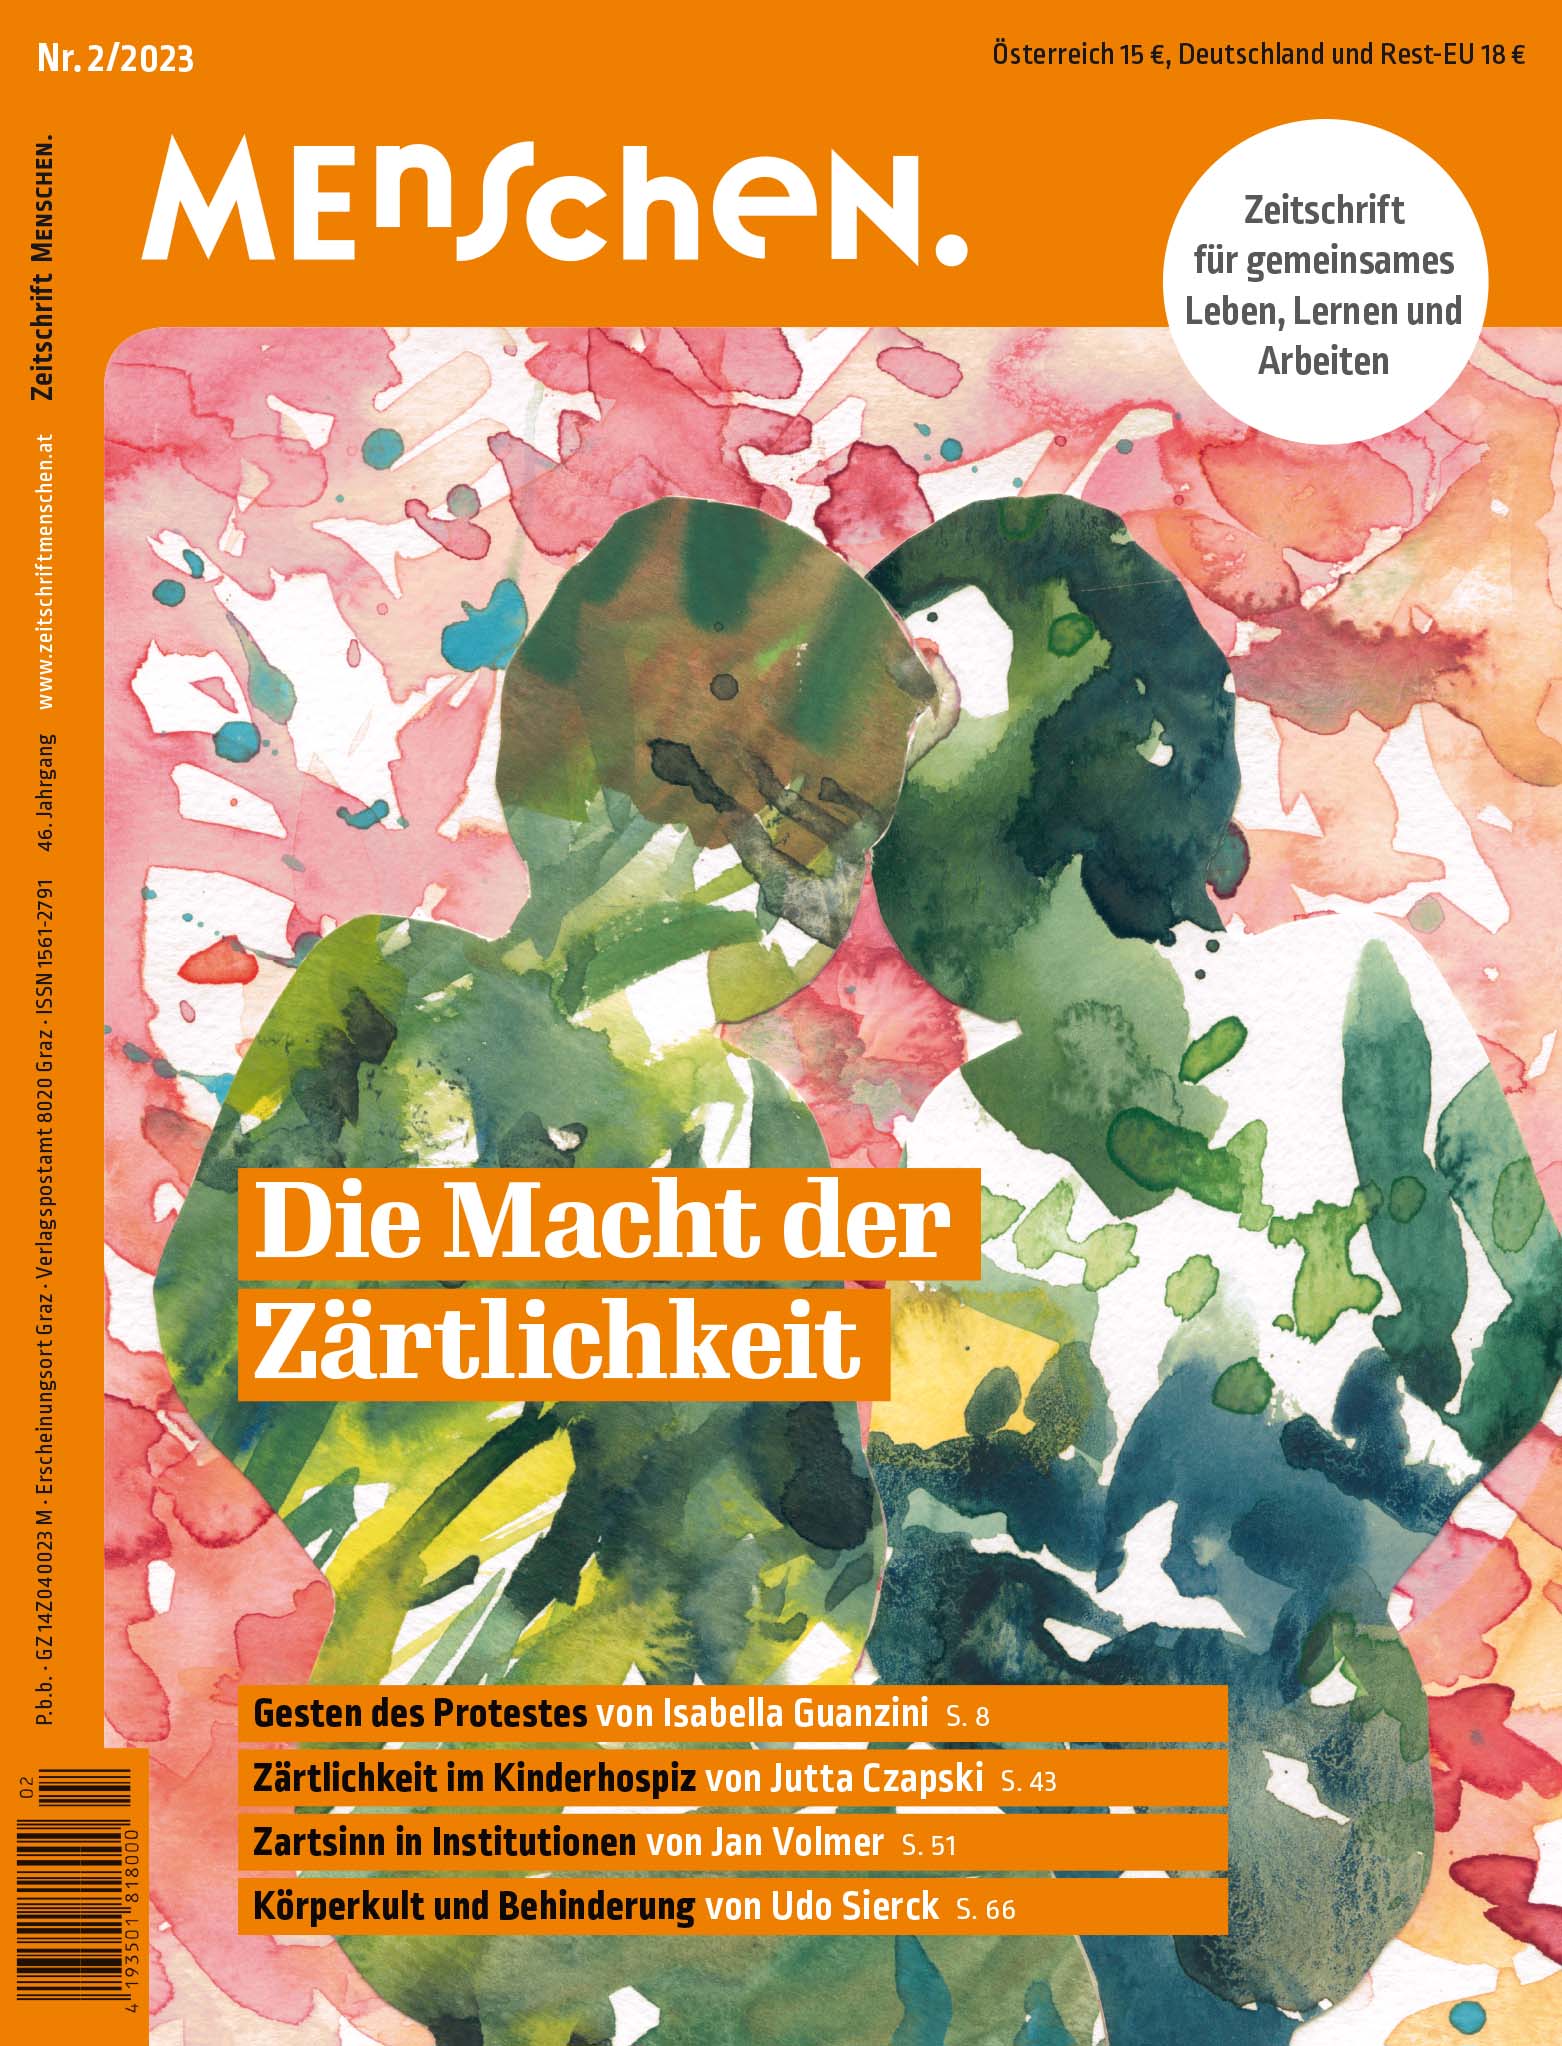 Titelbild der Zeitschrift BEHINDERTE MENSCHEN, Ausgabe 2/2023 "Die Macht der Zärtlichkeit"